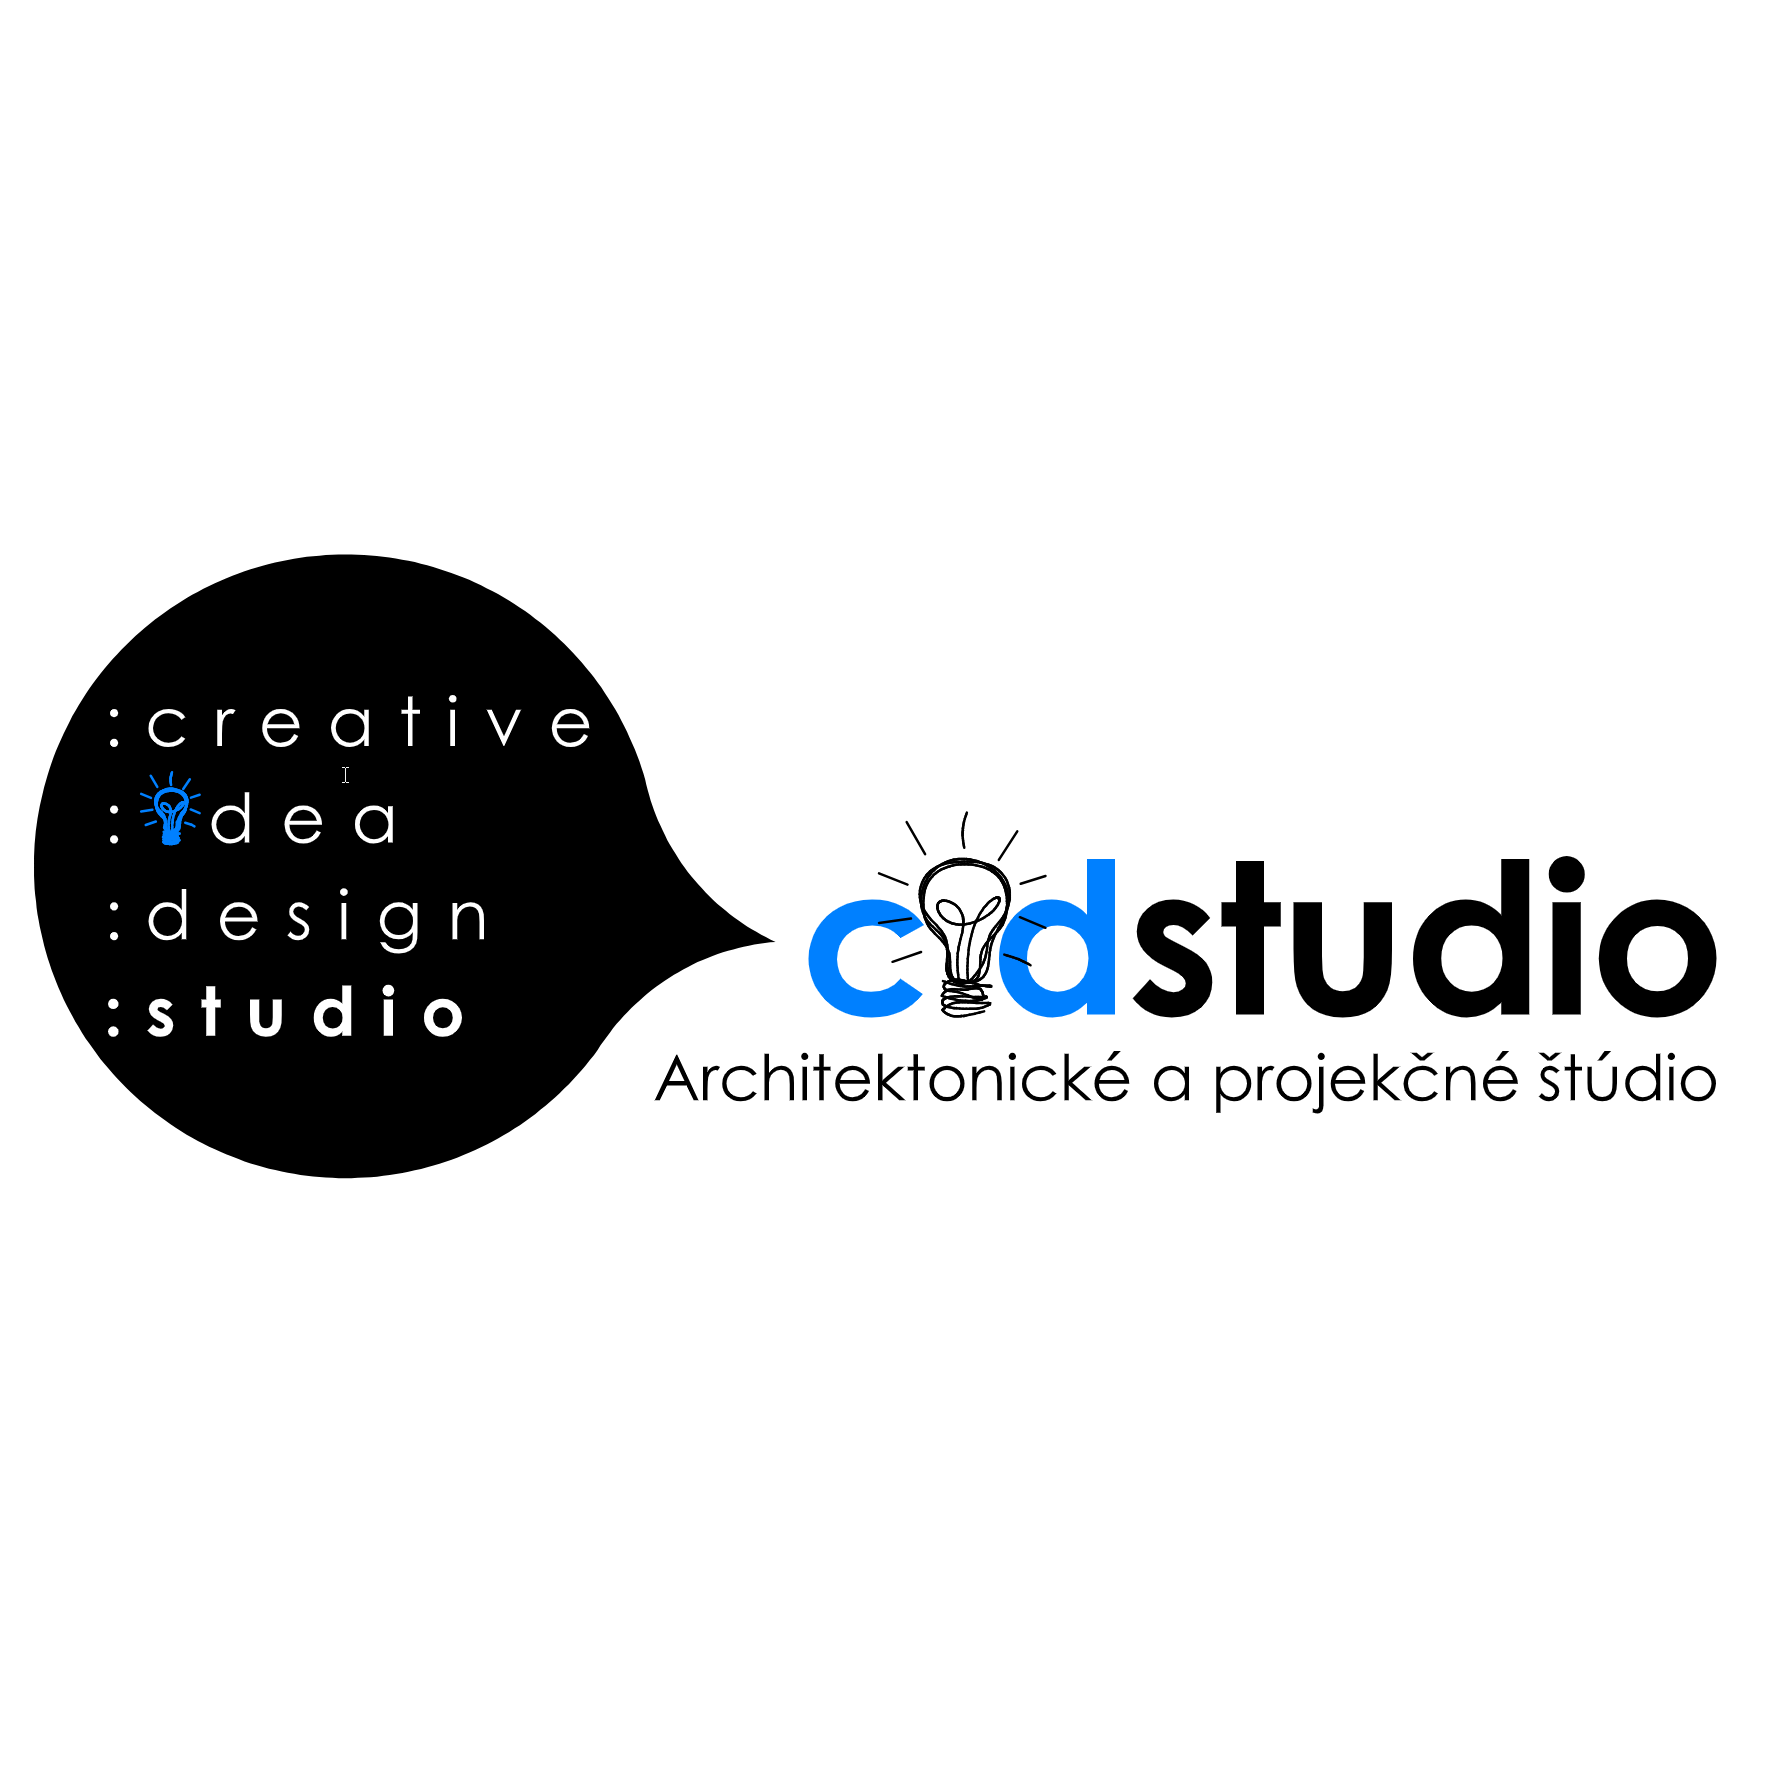 CIDSTUDIO, creative - idea - design studio